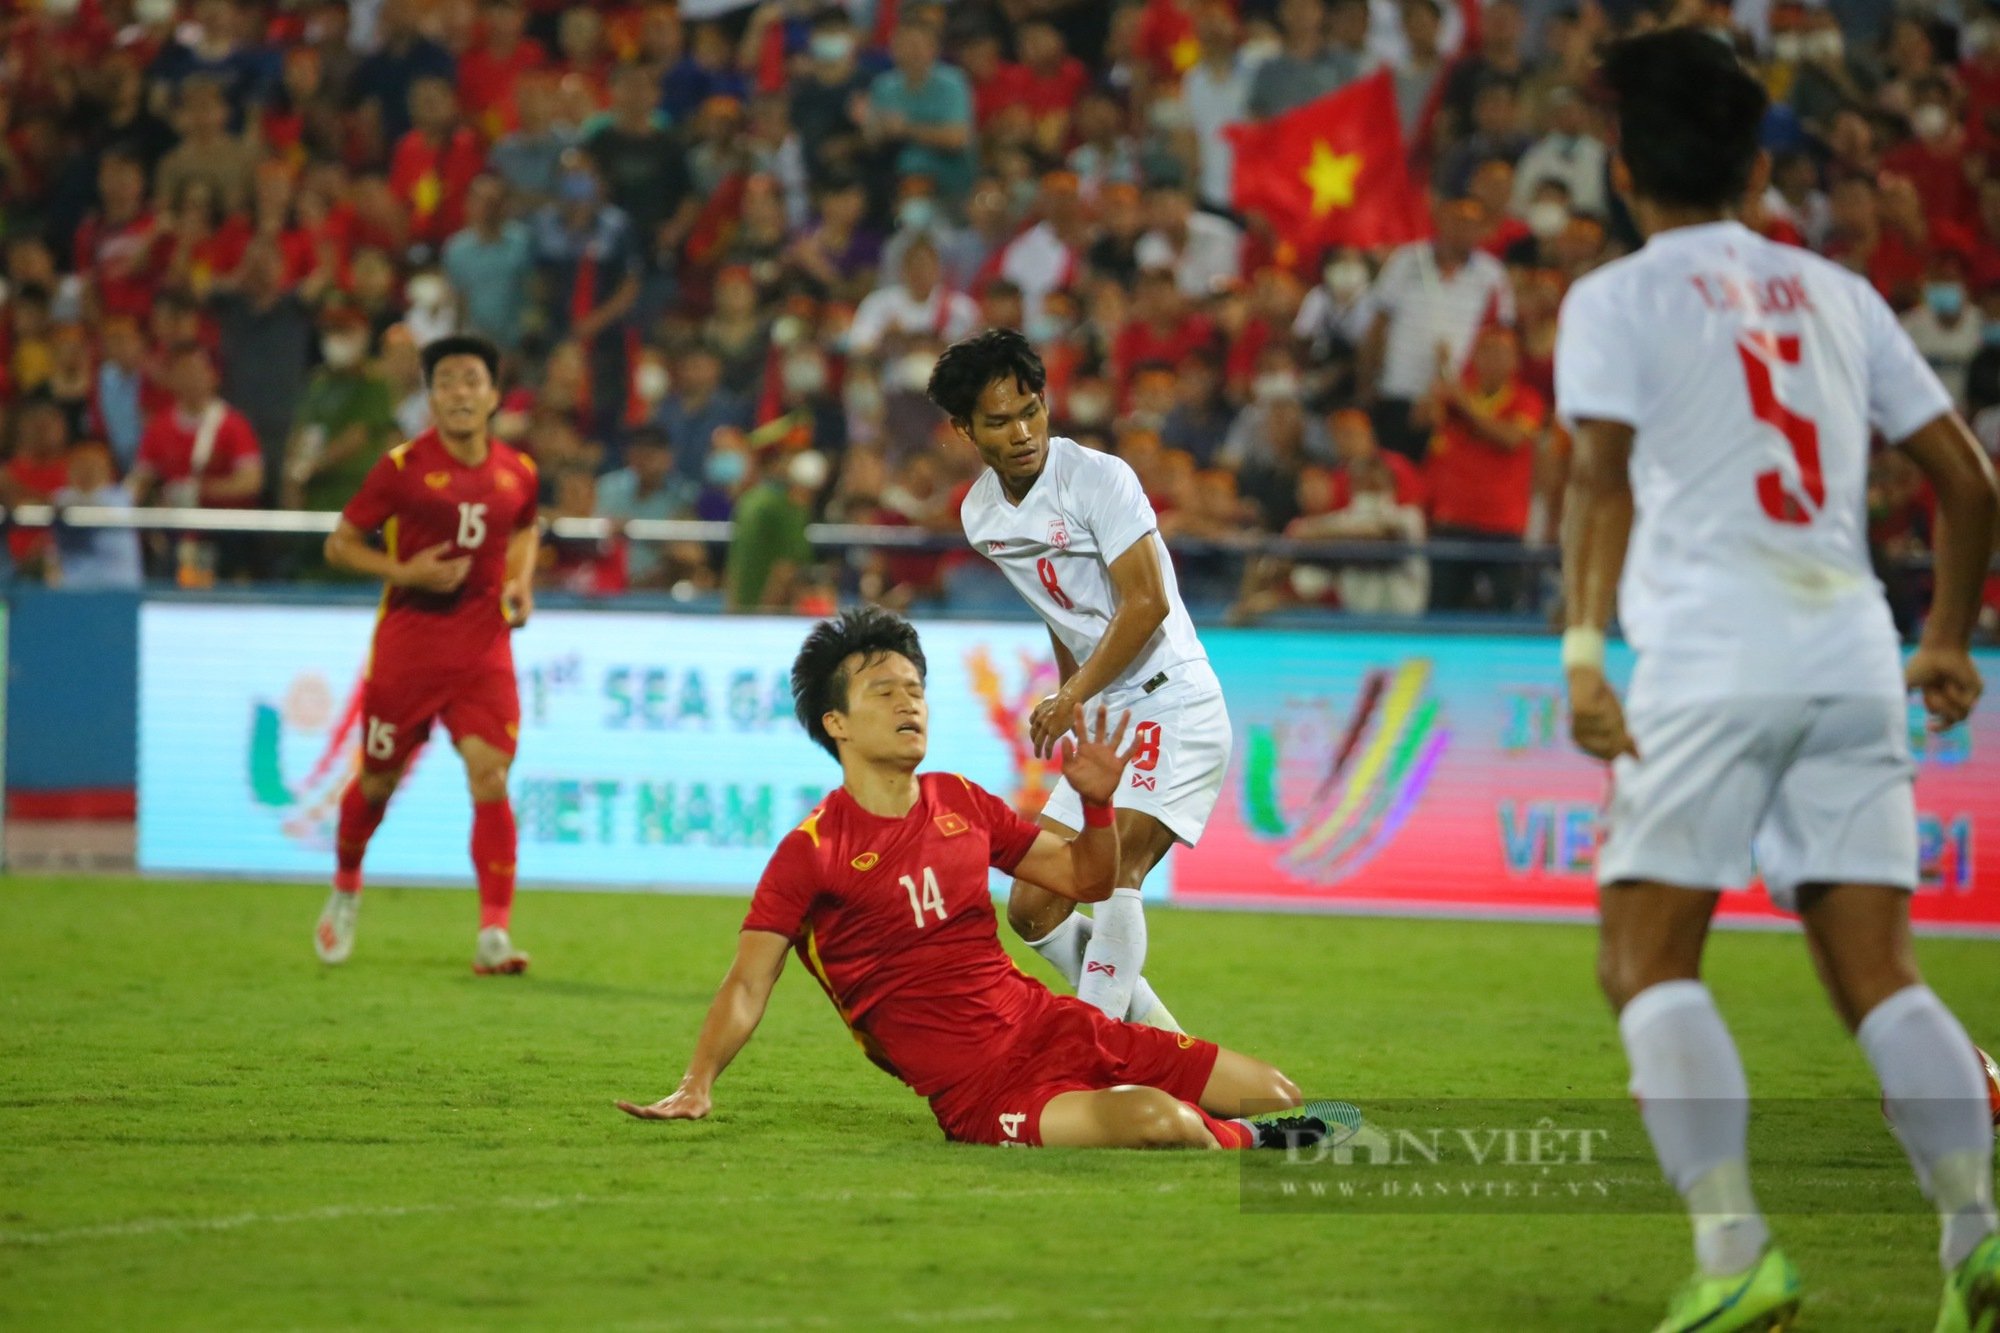 HLV Park Hang-seo ăn mừng cùng U23 Việt Nam sau chiến thắng Myanmar - Ảnh 3.